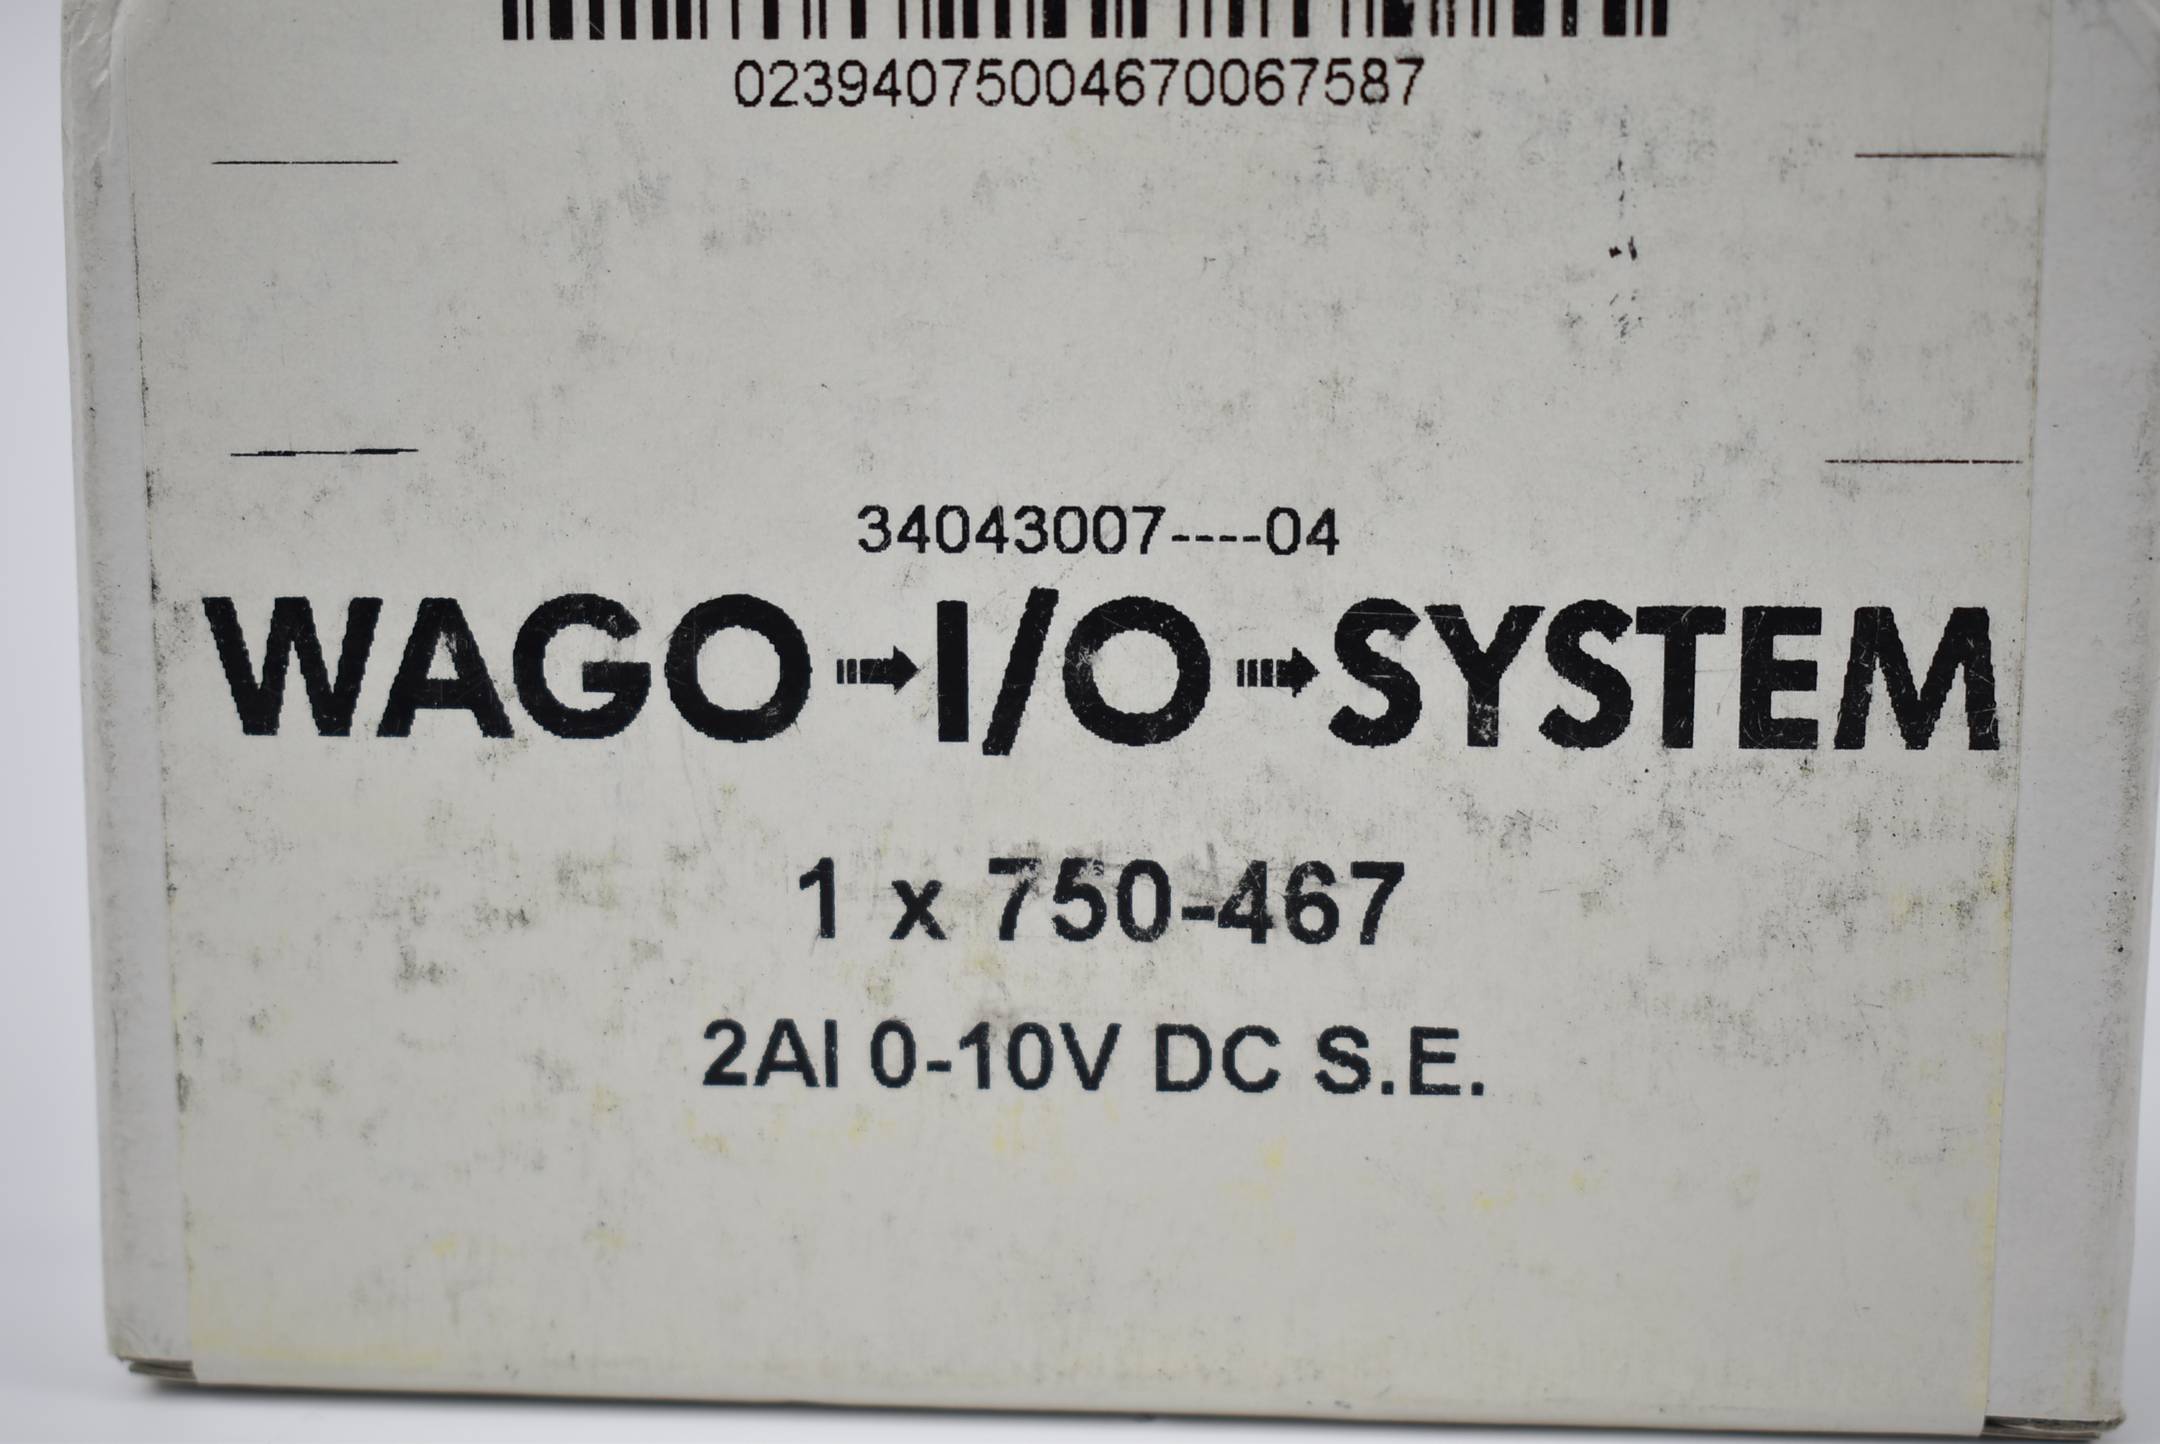 Wago I/O Systeme 2-Kanal-Analogeingang 0-10VDC Single-Ended 750-467